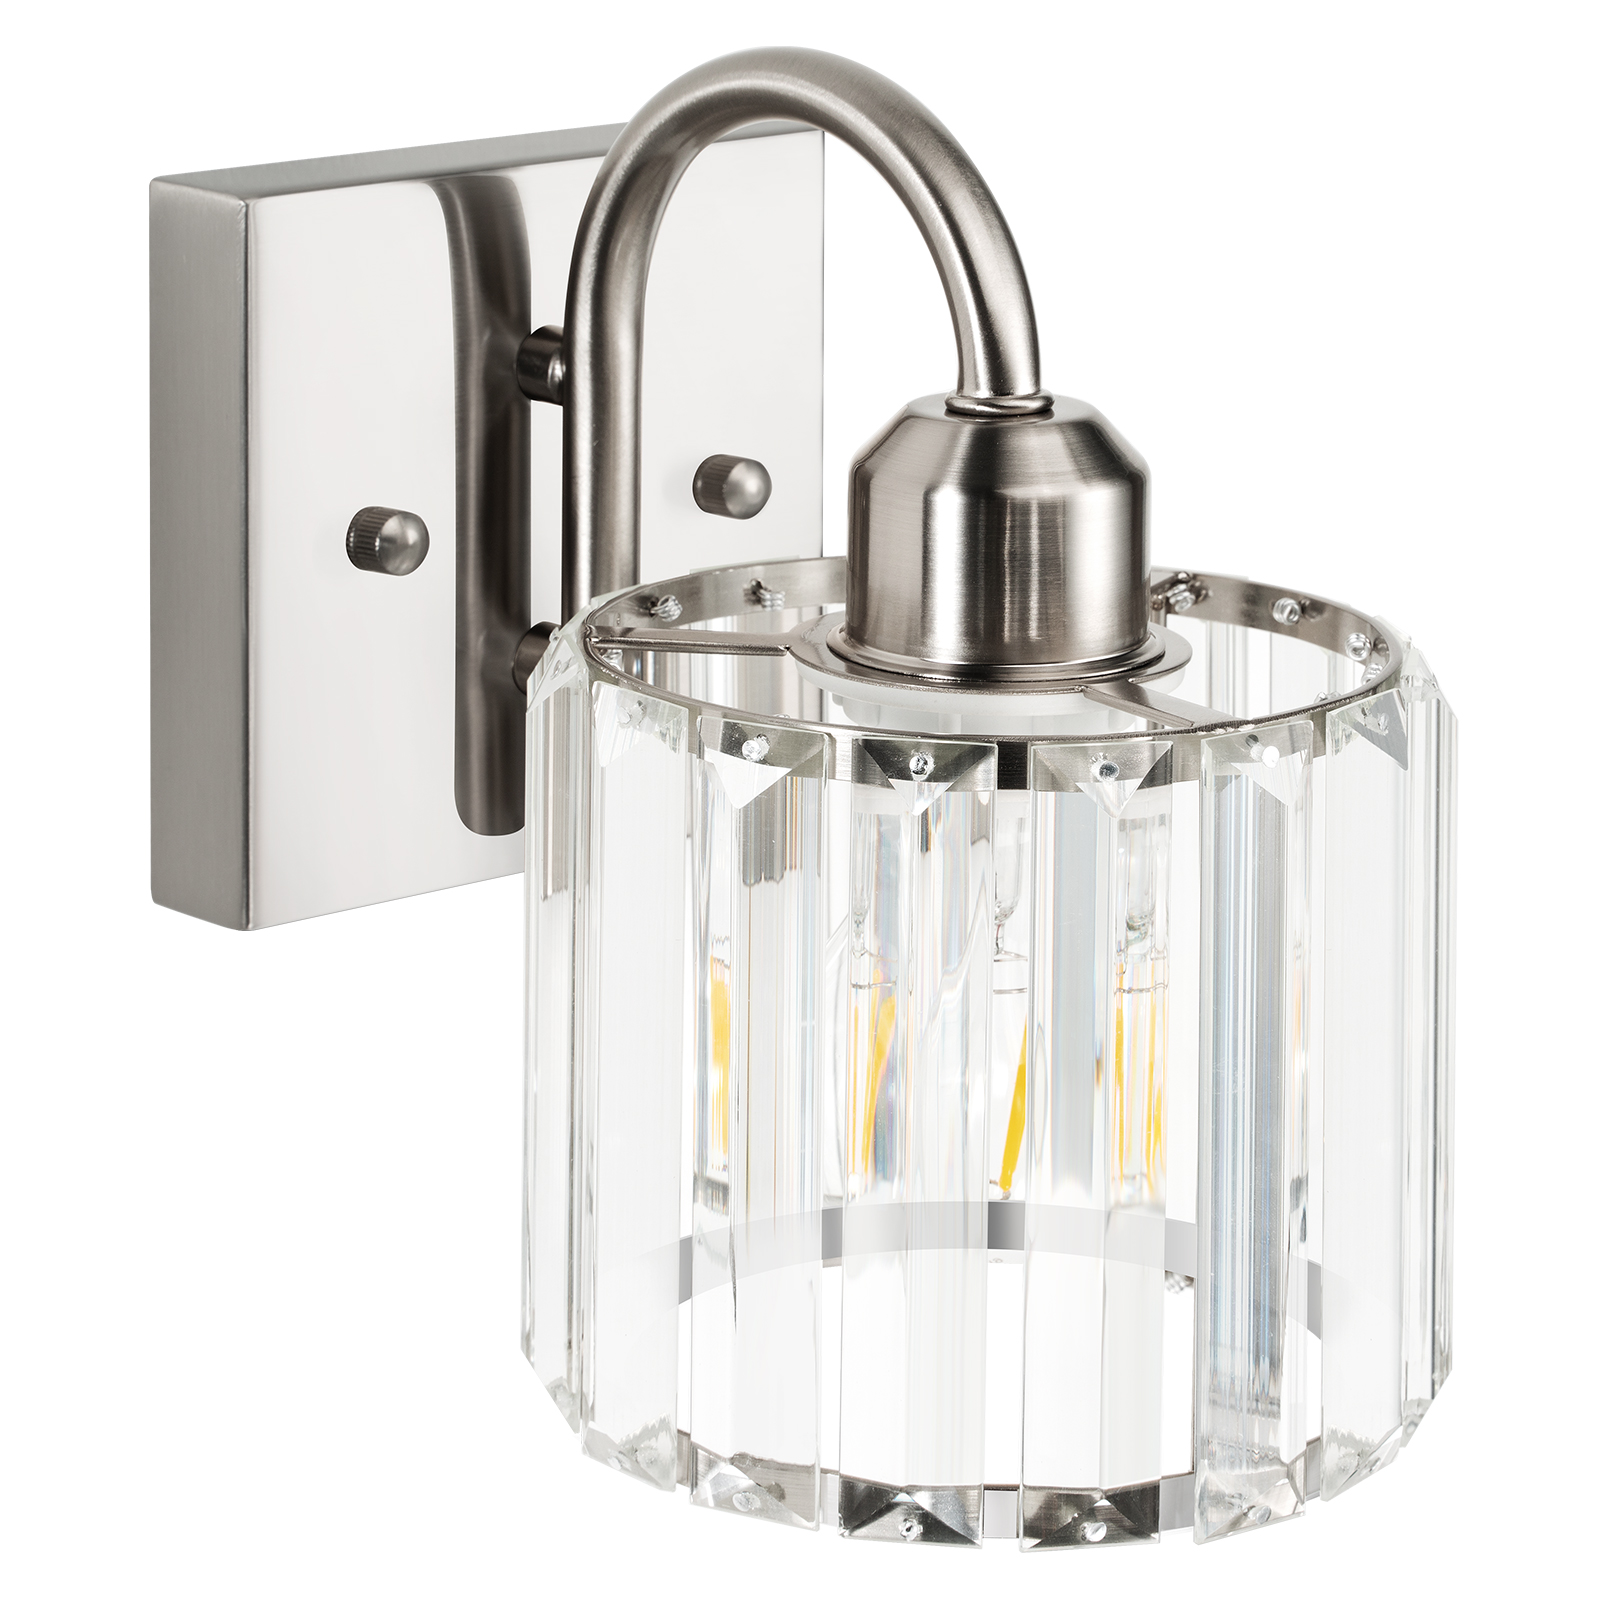 Vanity Light Fixtures, Bathroom Light Fixtures1 Light,Brushed Nickel by Valytime